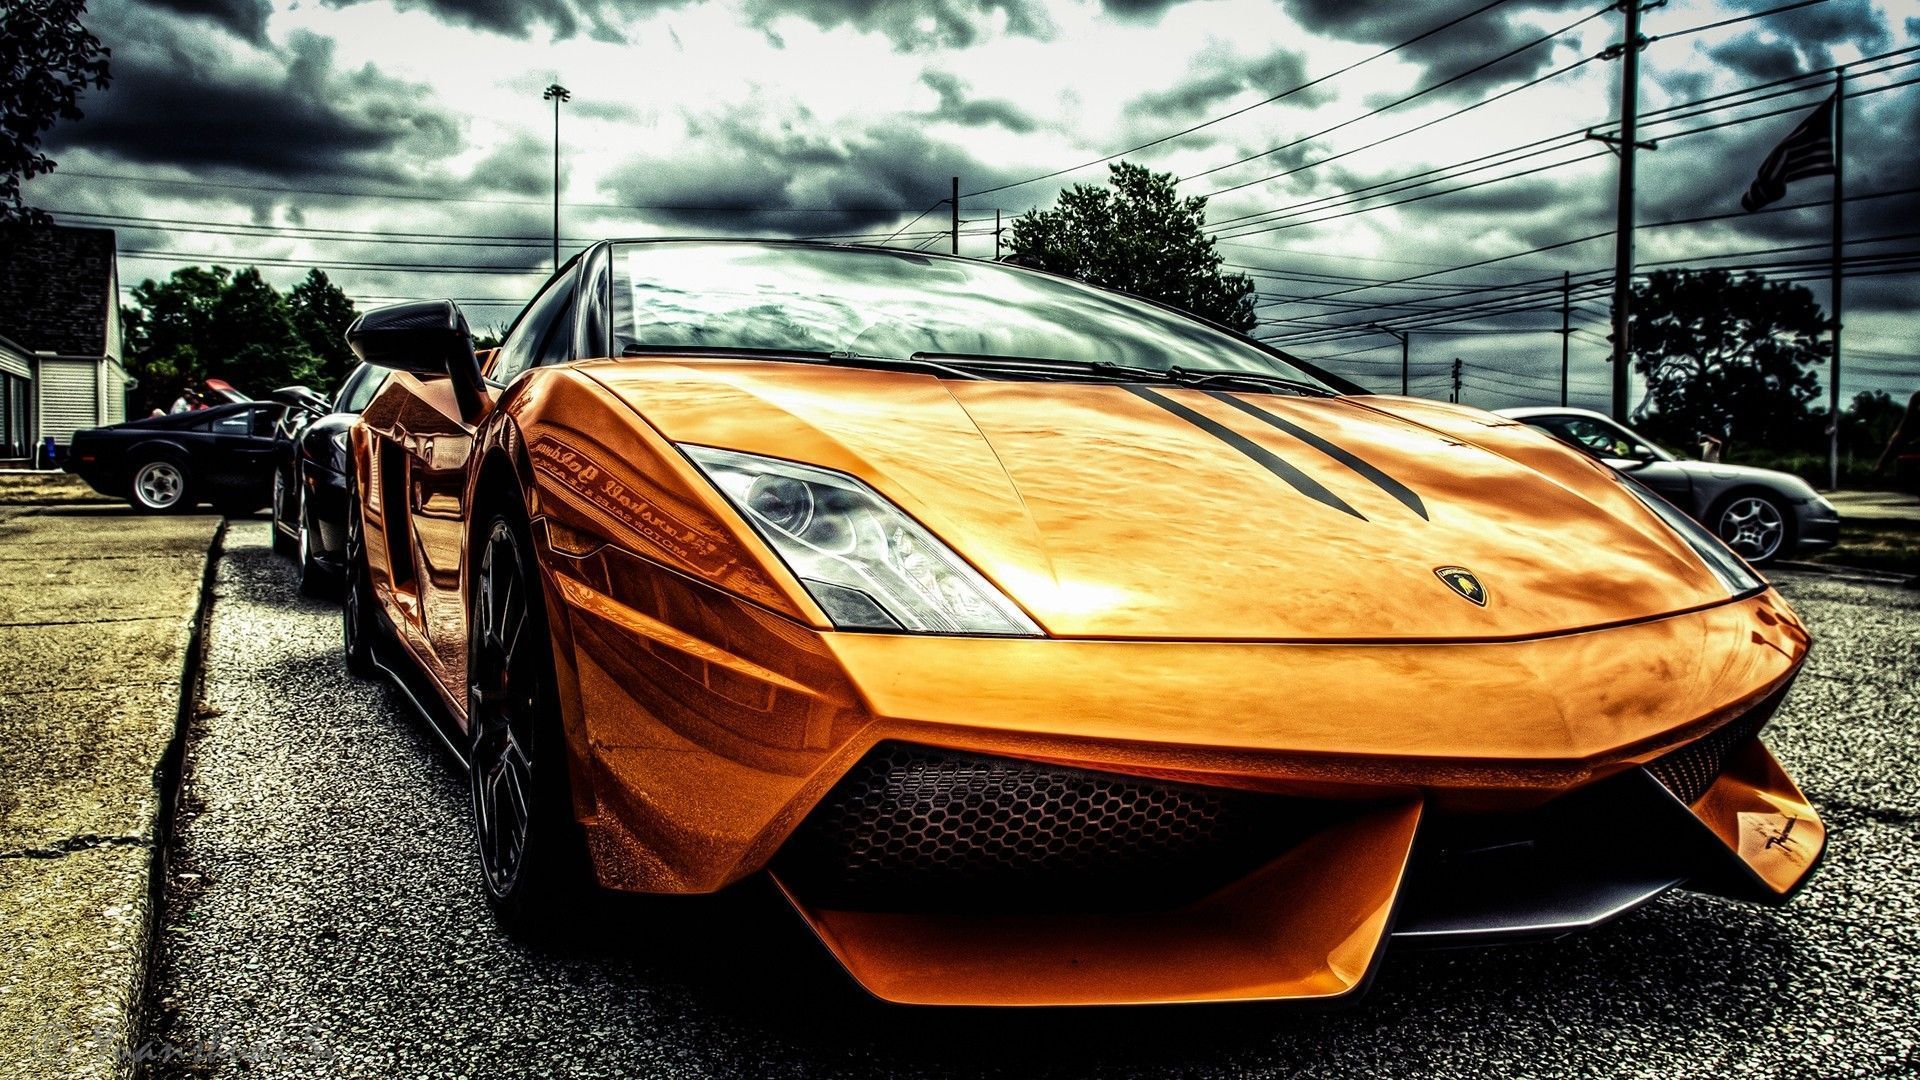 Gold Lamborghini HD Wallpaper | 1920x1080 | ID:48717